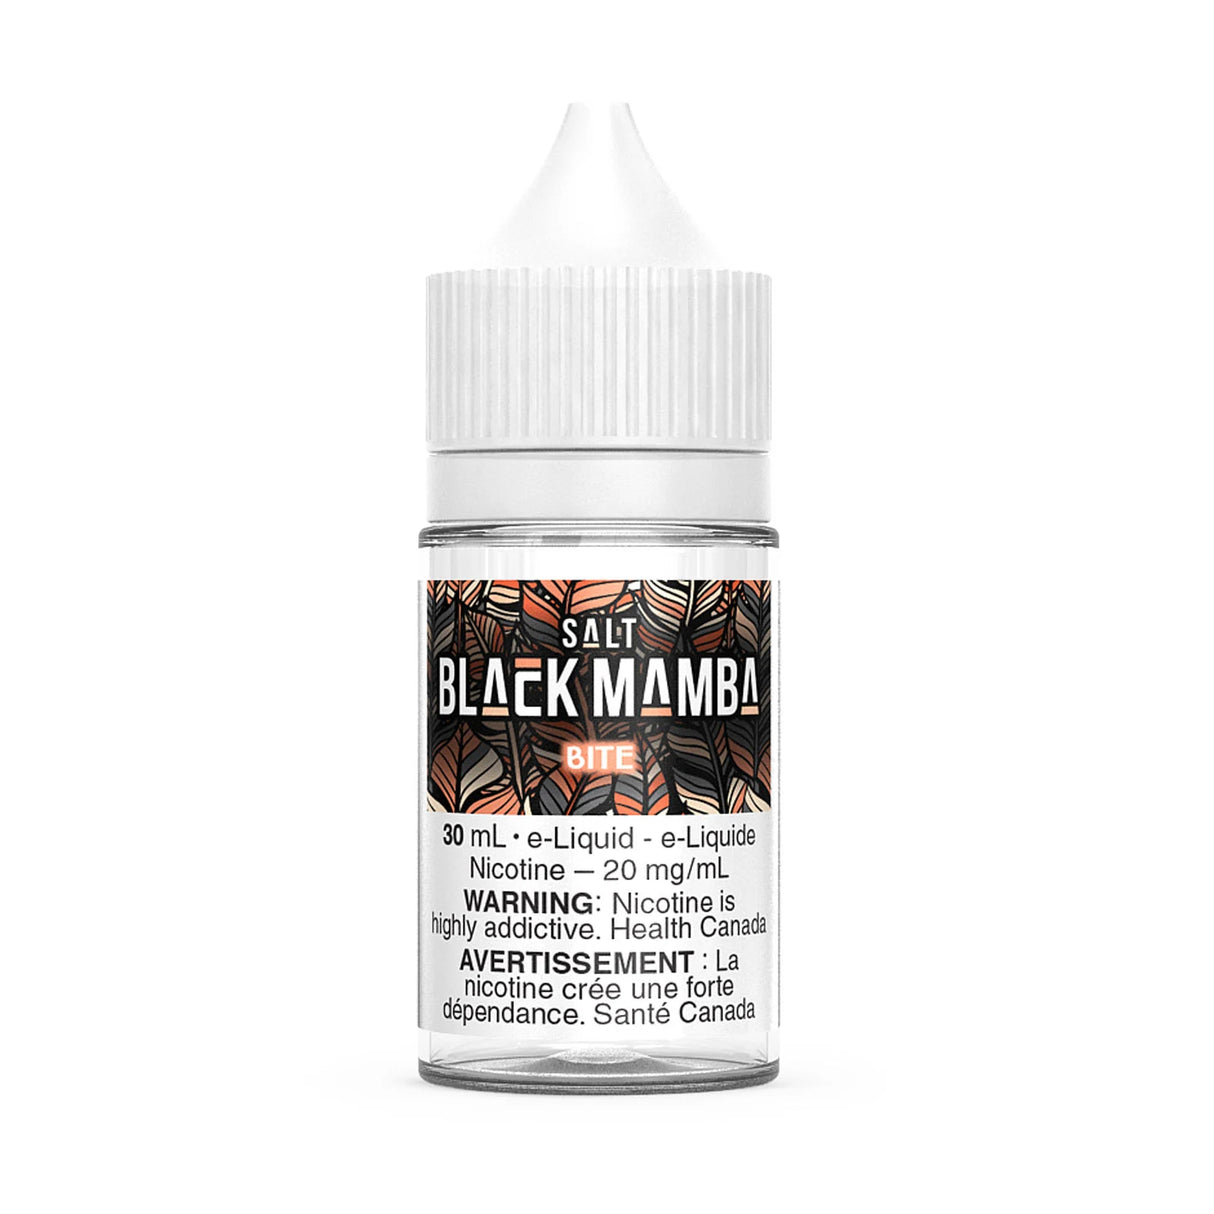 Black Mamba E-liquids - BITE - 30ml